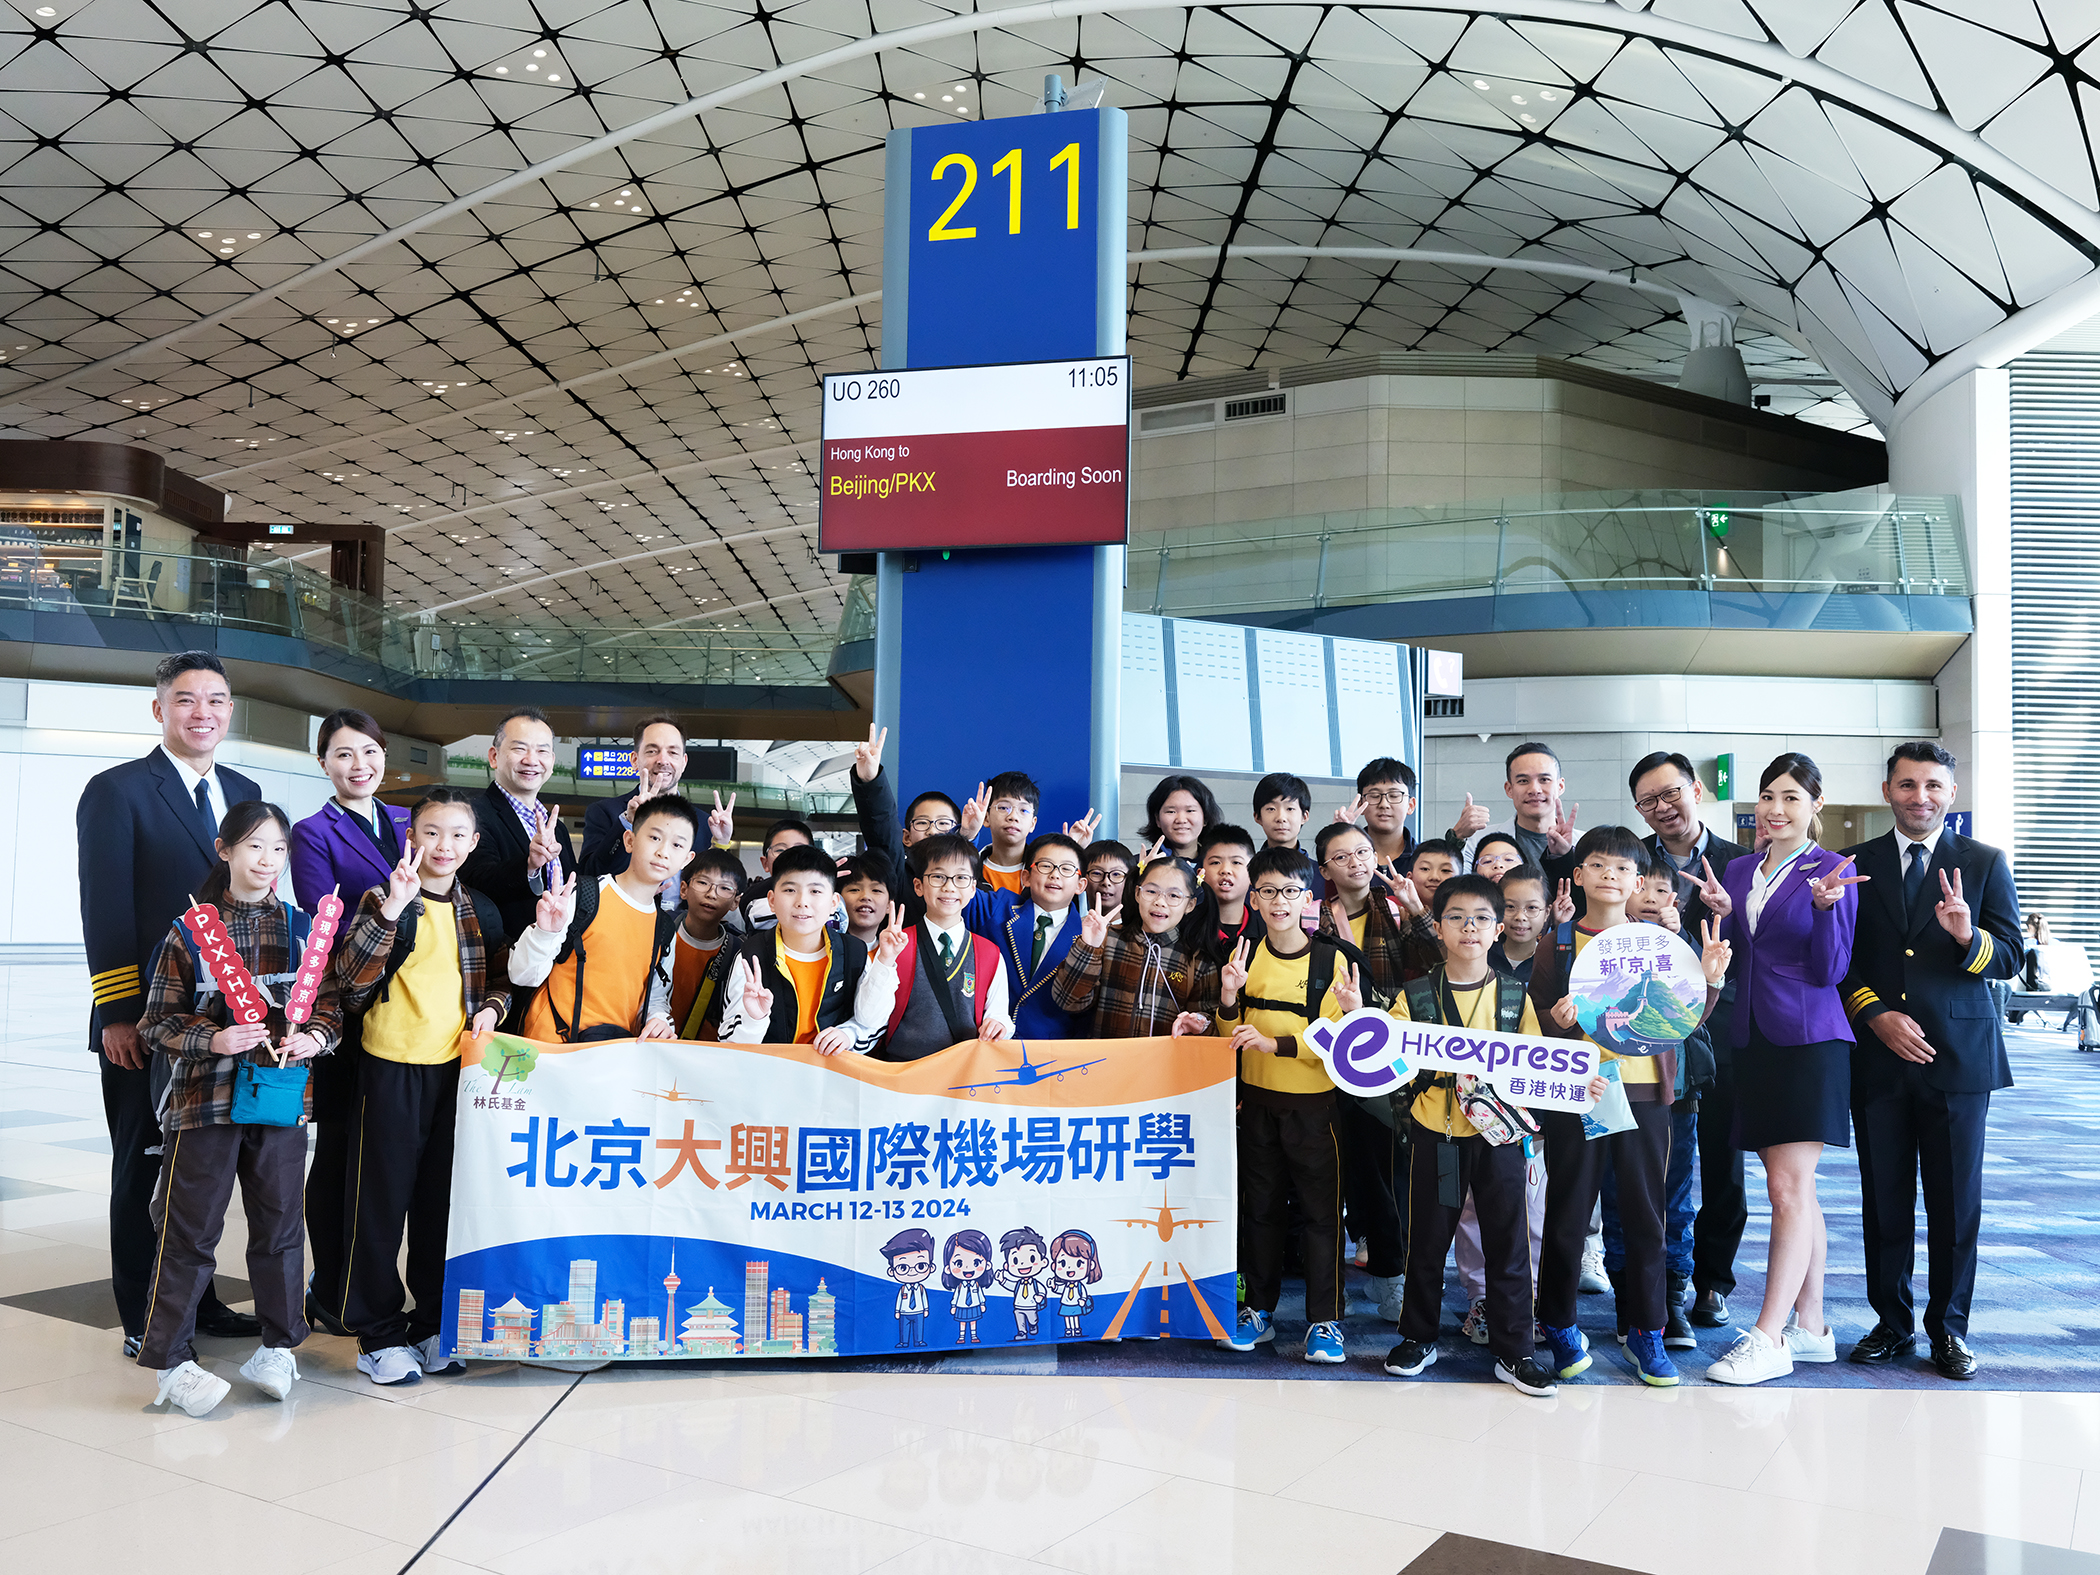 香港快運航空北京大興新航線今日首航